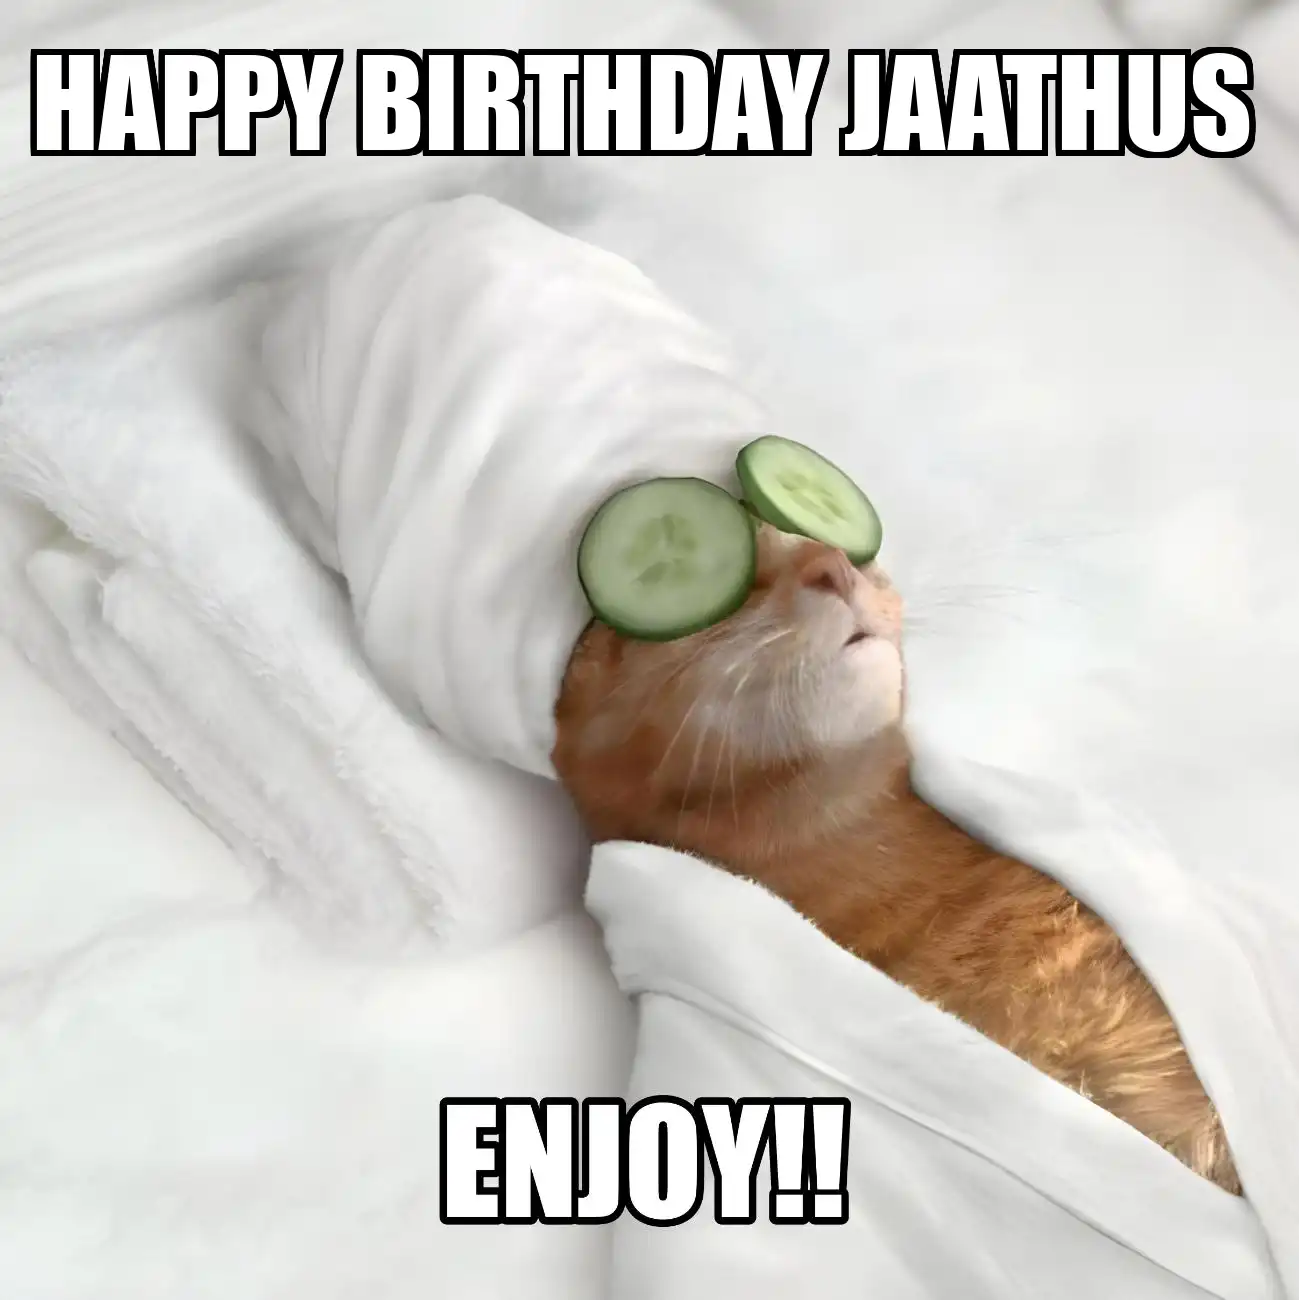 Happy Birthday Jaathus Enjoy Cat Meme